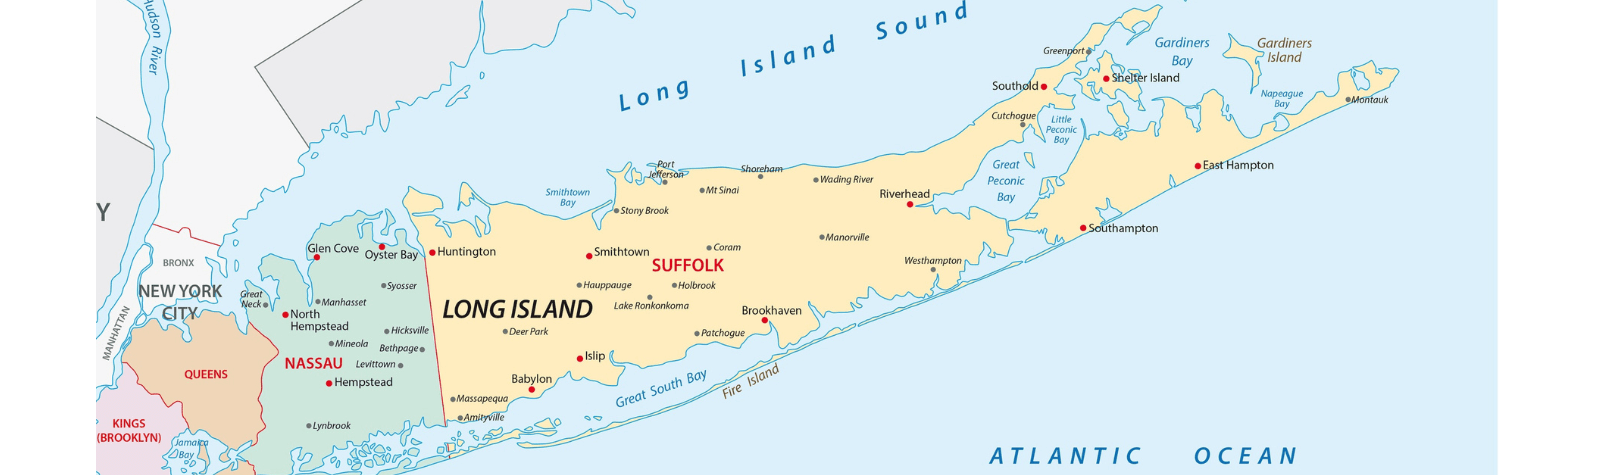 suffolk county long island ny map